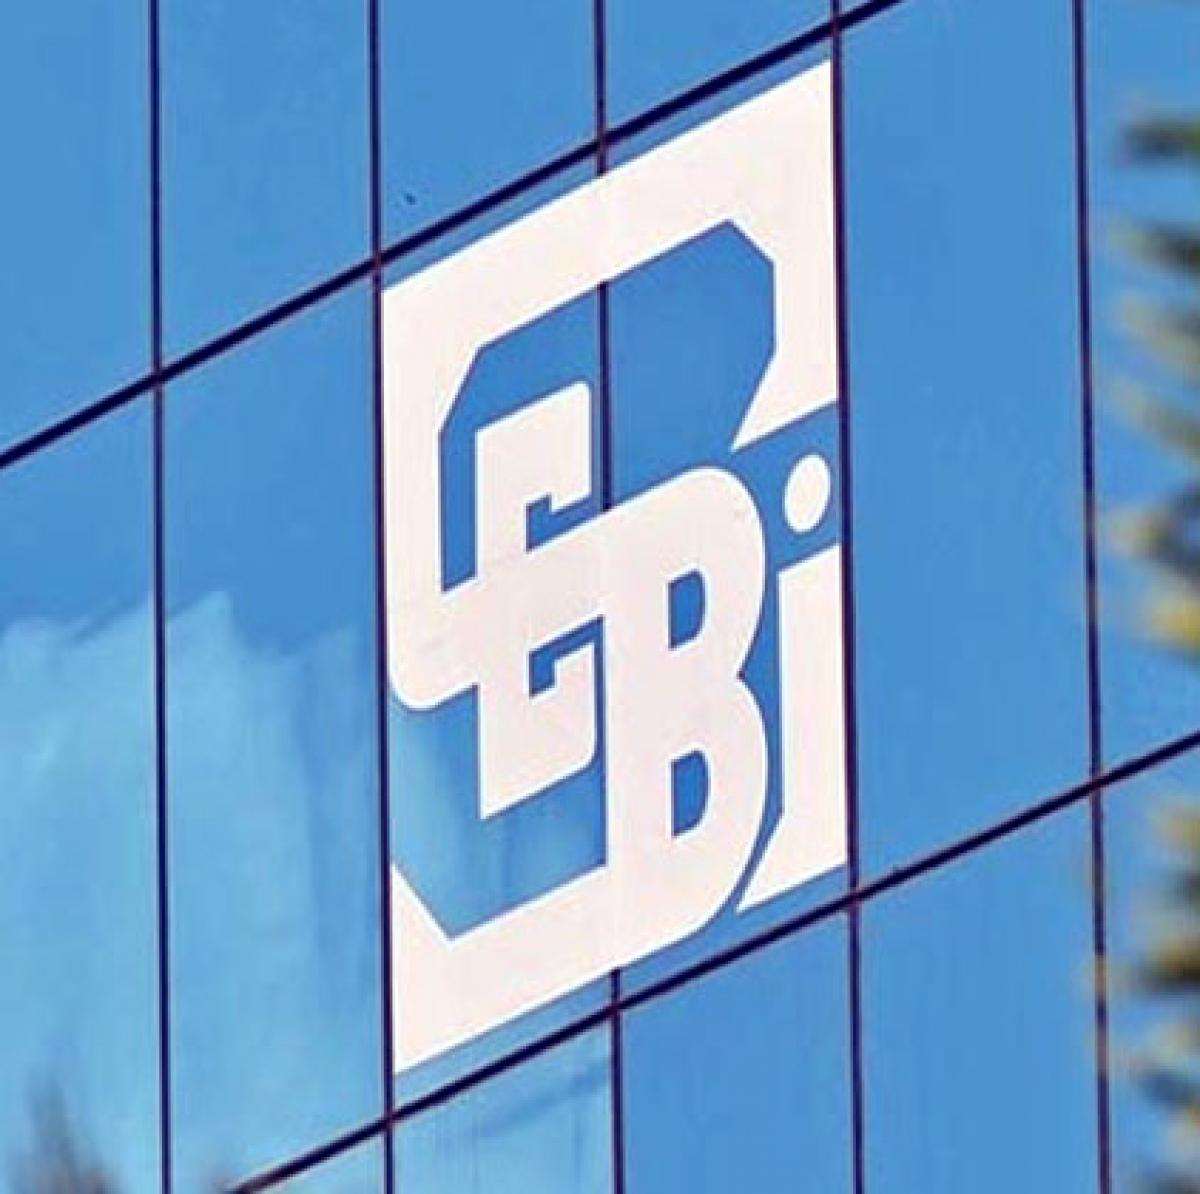 Sebi wants IPO Clarification From RBL Bank, Matrimony